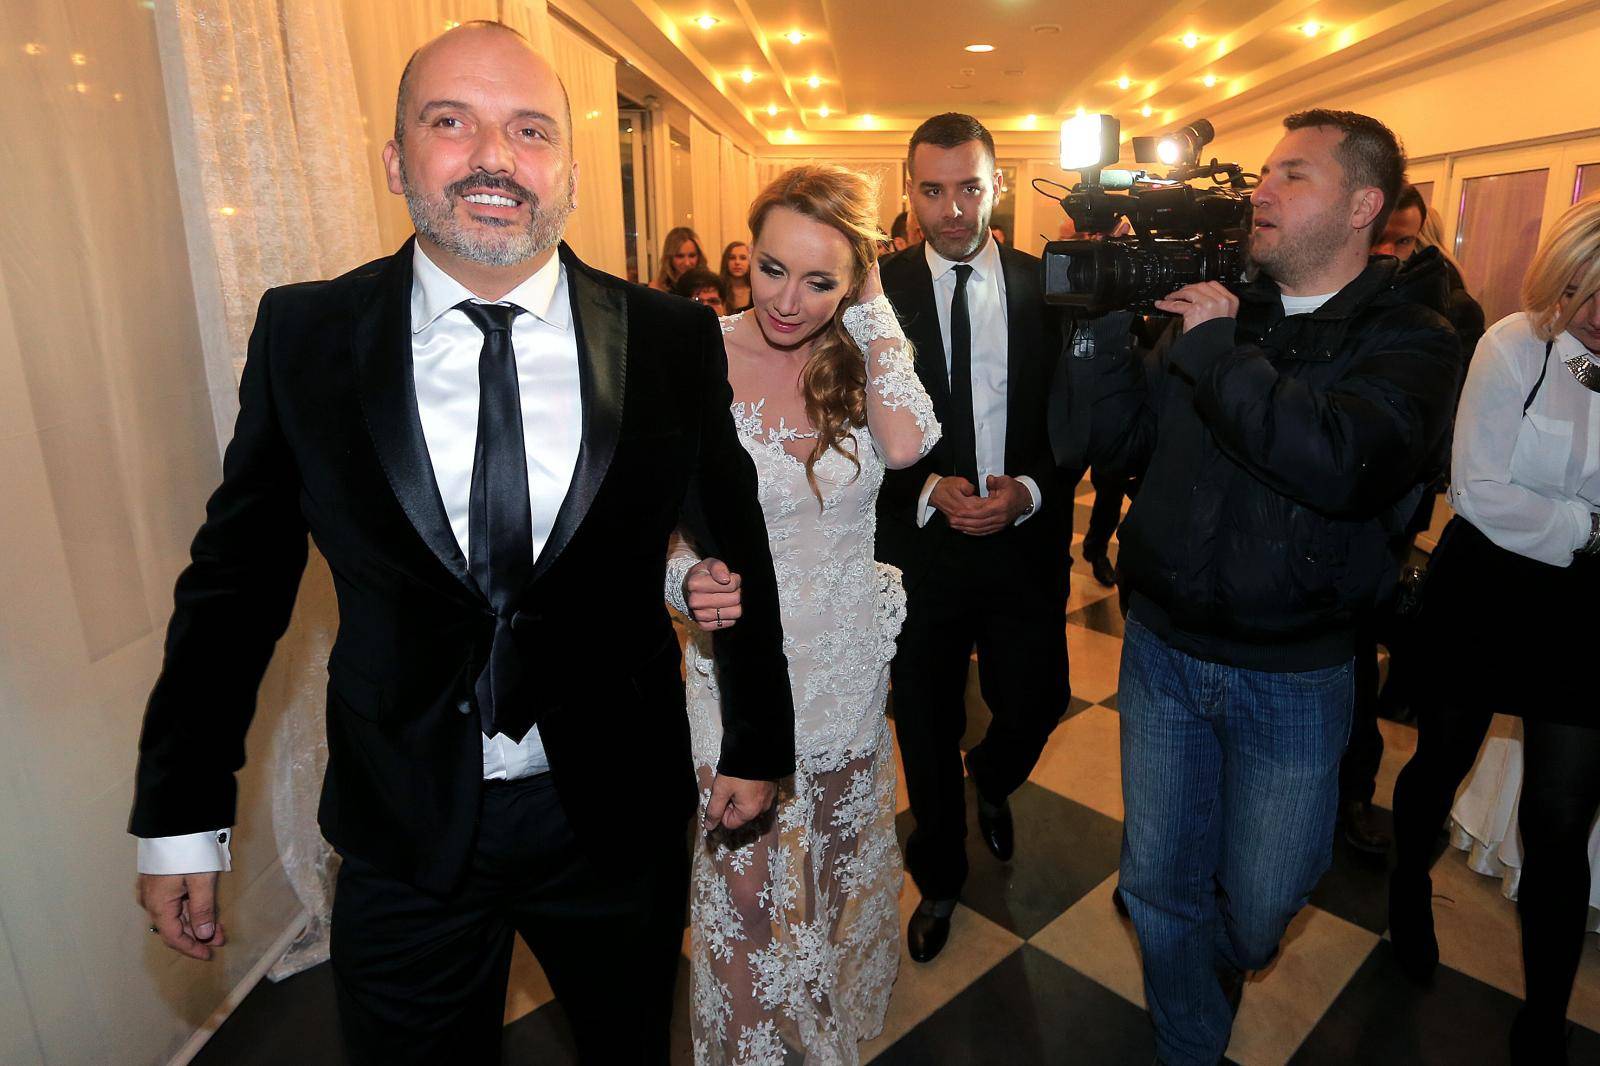 Raskošna vjenčanja: Ministar je zbog kćeri blokirao promet, a Tedeschi oženio 17 godina stariju